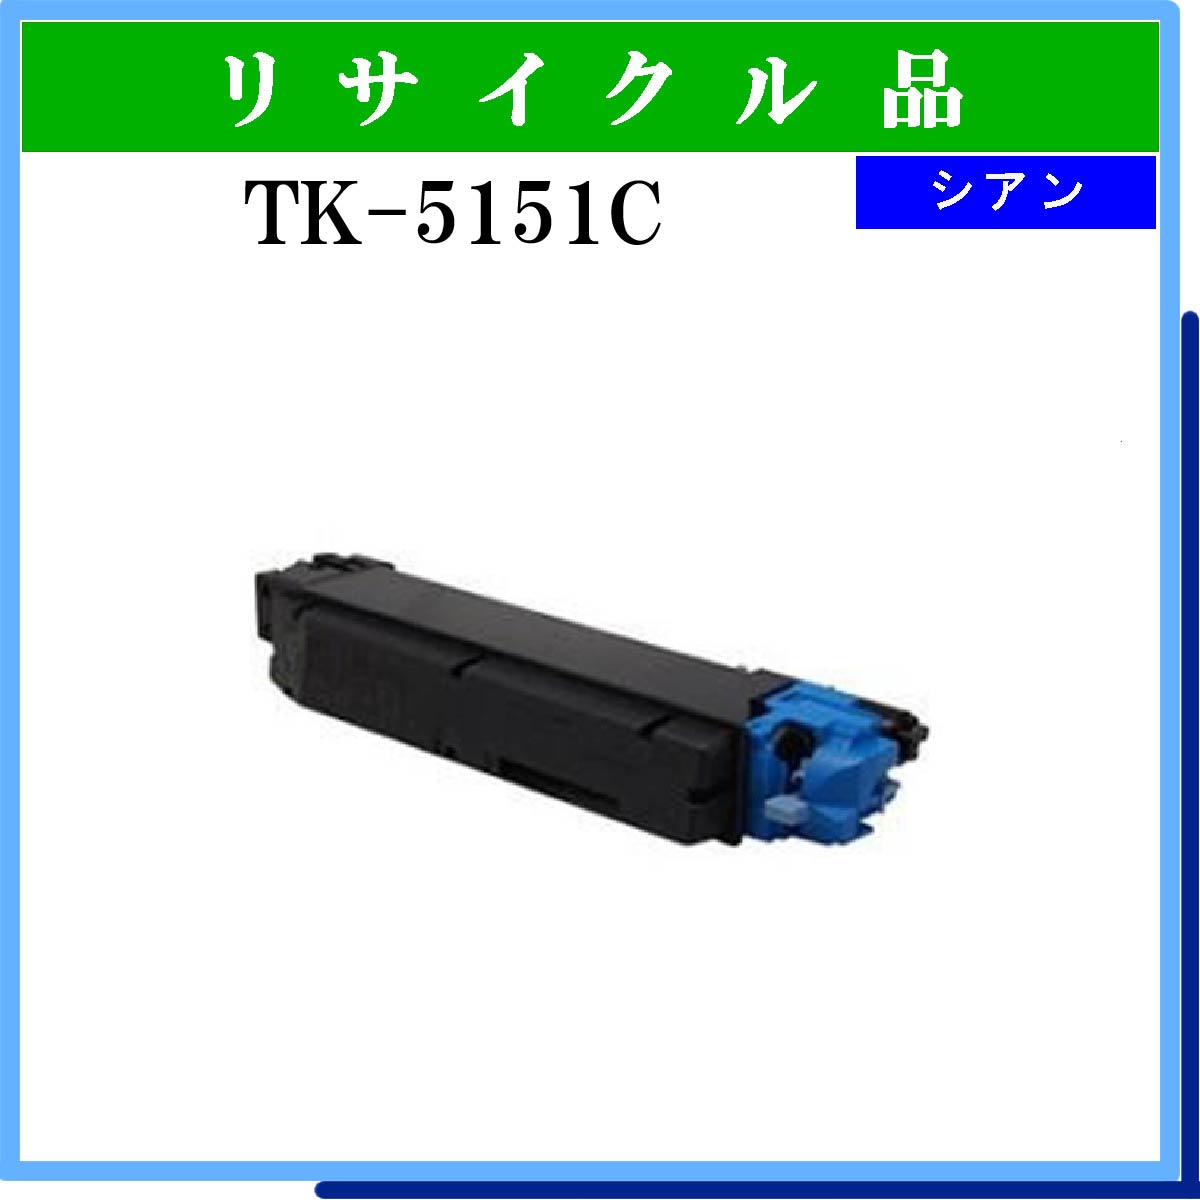 TK-5151C